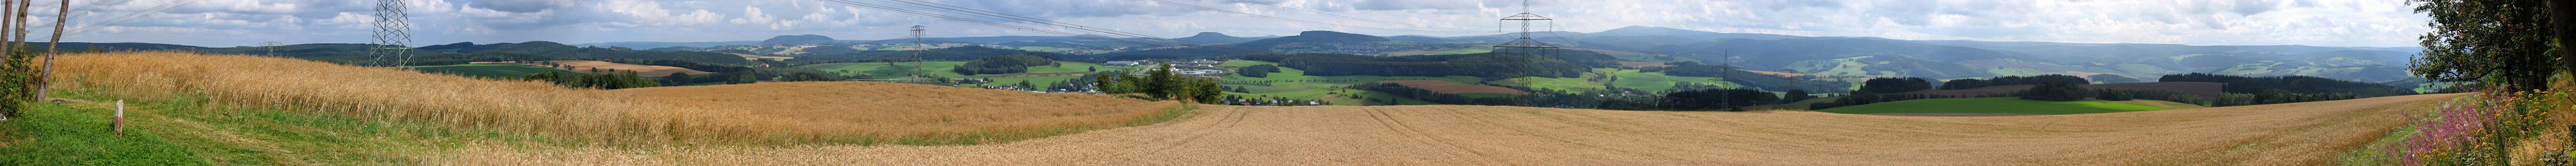 Panorama von der Friedrich-August-Höhe (717 m ü. NN) in Richtung Elterlein mit Blick auf Pöhlberg (832m ü.NN), Bärenstein (897 m ü. NN), Scheibenberg (807 m ü. NN), Fichtelberg (1215 m ü. NN) und das Oberbecken des Pumpspeicherwerkes Markersbach (848 m ü. NN) (von links).